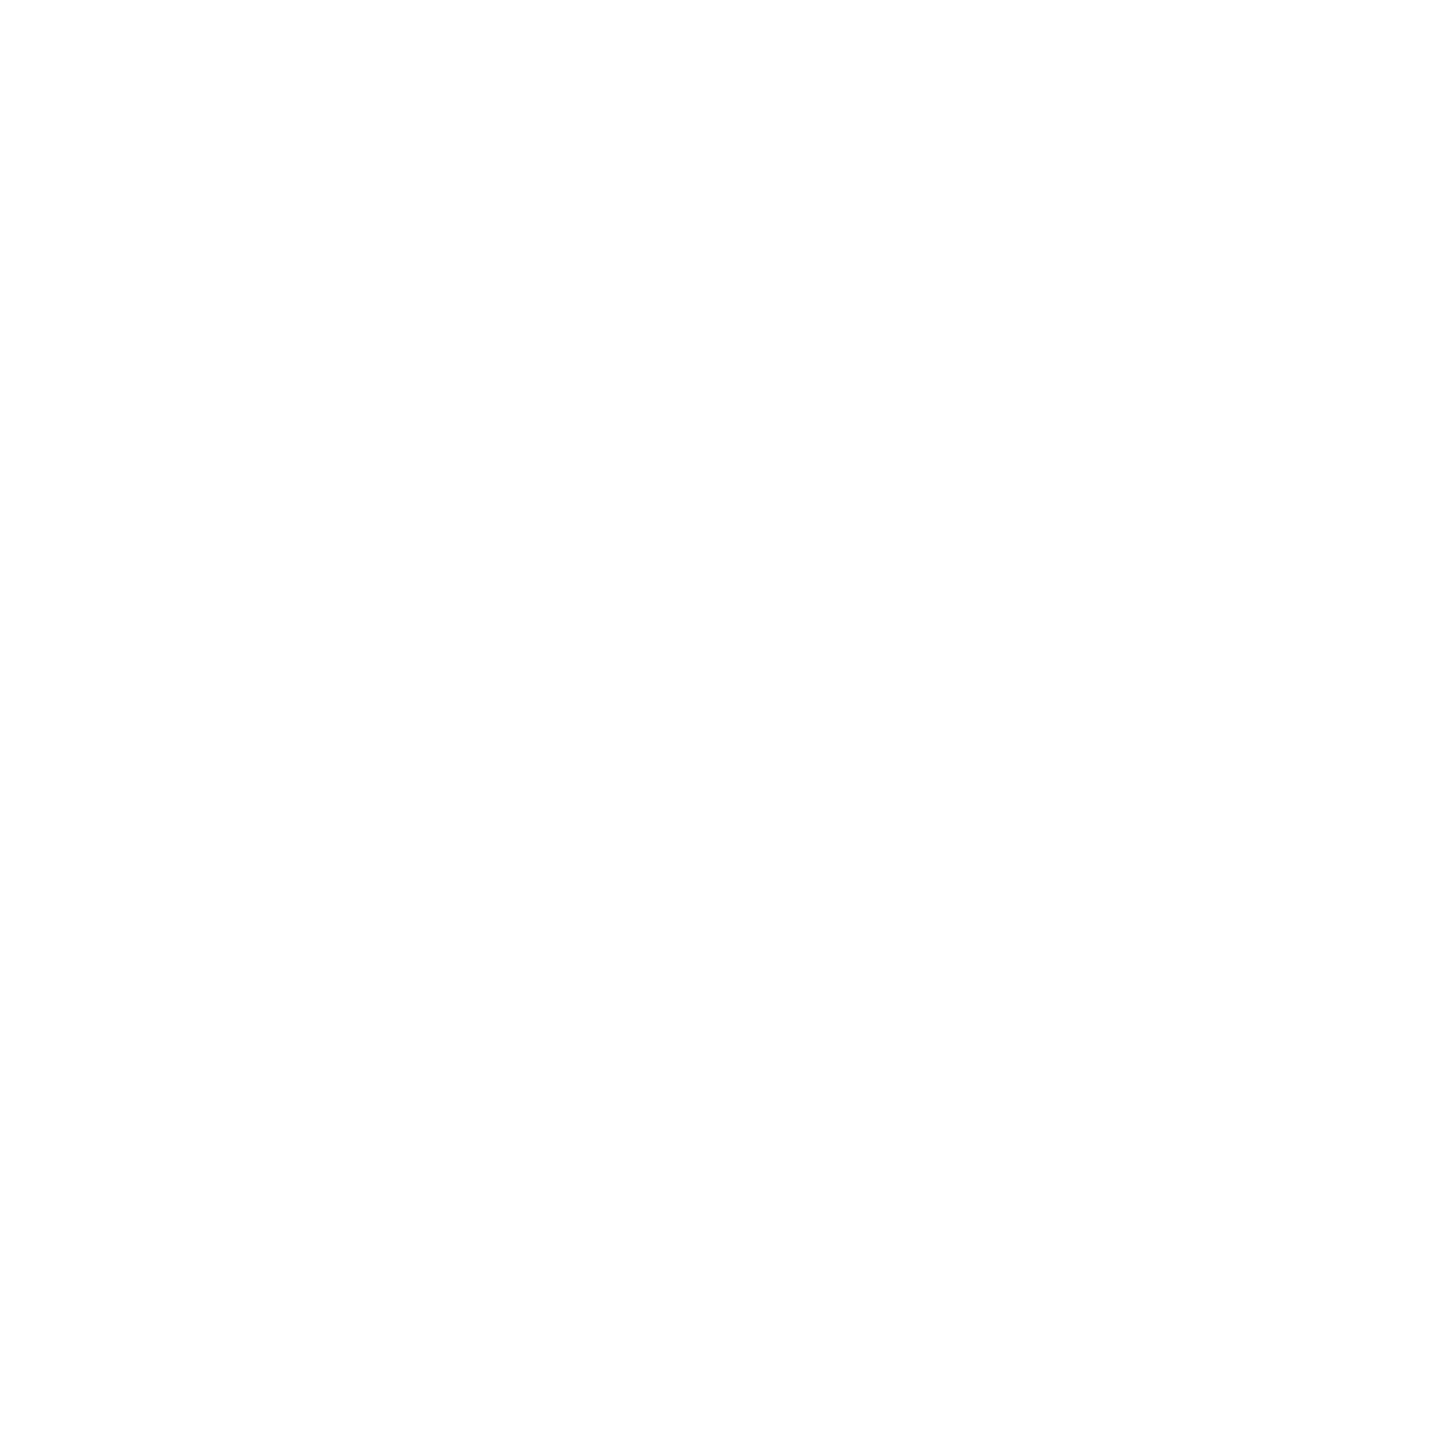 CRISPR Therapeutics logo pour fonds sombres (PNG transparent)